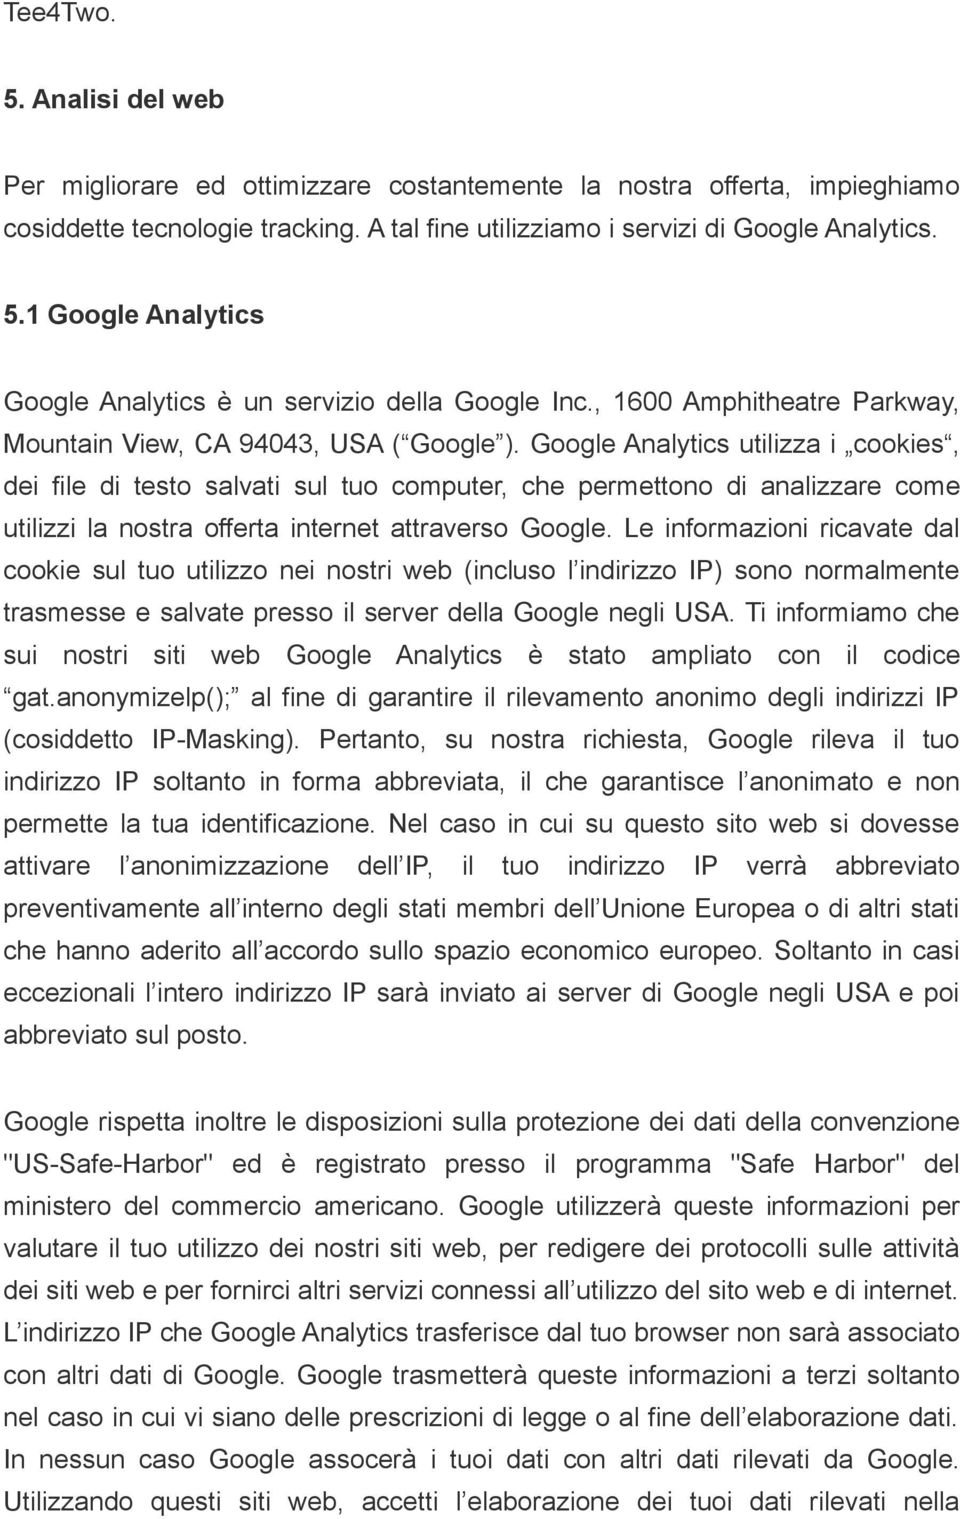 Google Analytics utilizza i cookies, dei file di testo salvati sul tuo computer, che permettono di analizzare come utilizzi la nostra offerta internet attraverso Google.